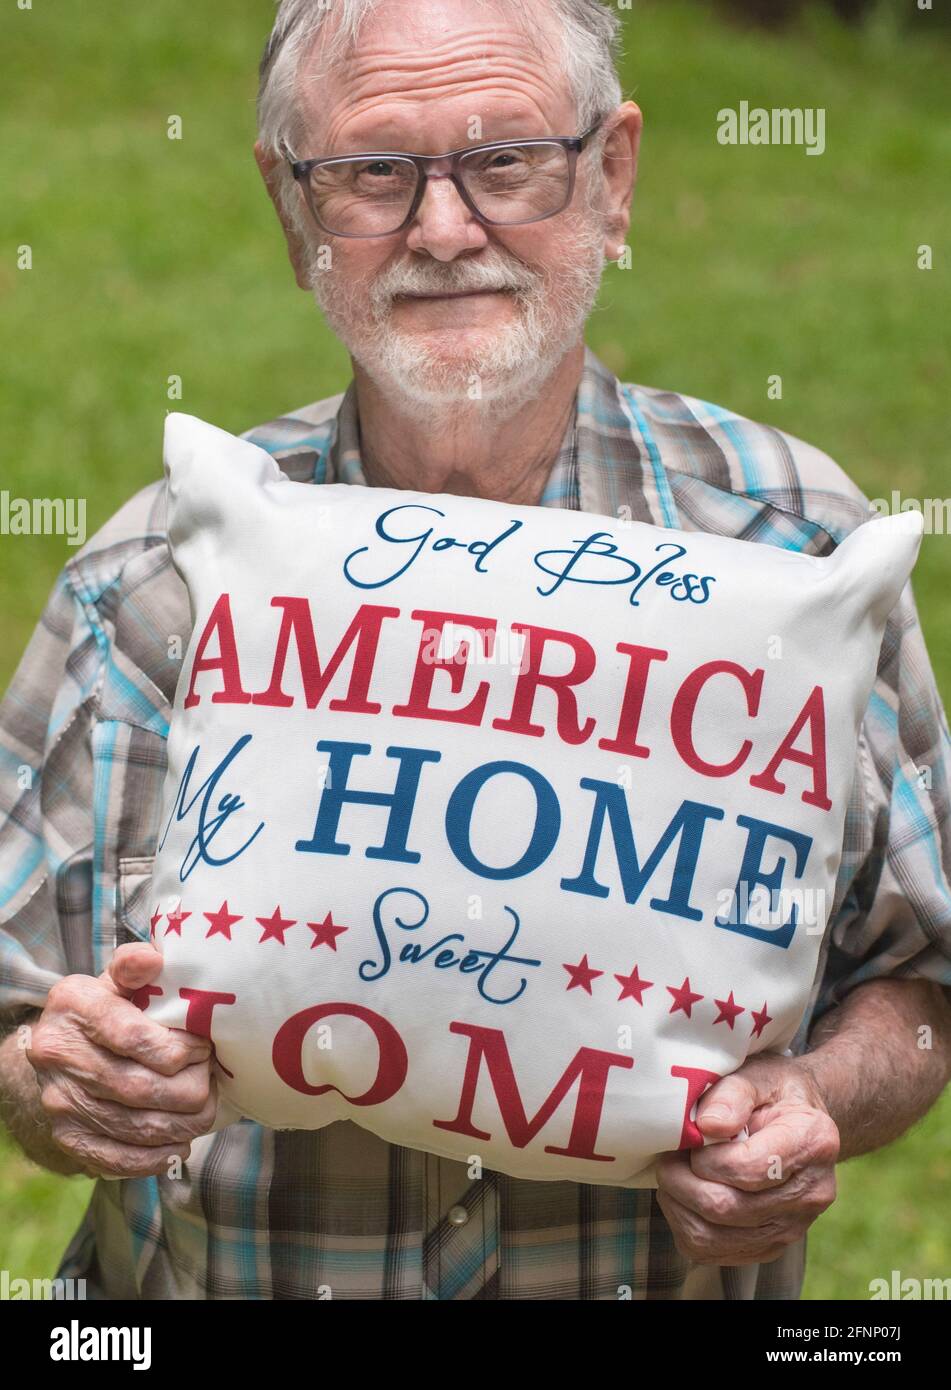 El hombre mayor tiene una almohada patriótica que Dios bendiga a América en honor al Día de la Independencia de los Estados Unidos. Foto de stock